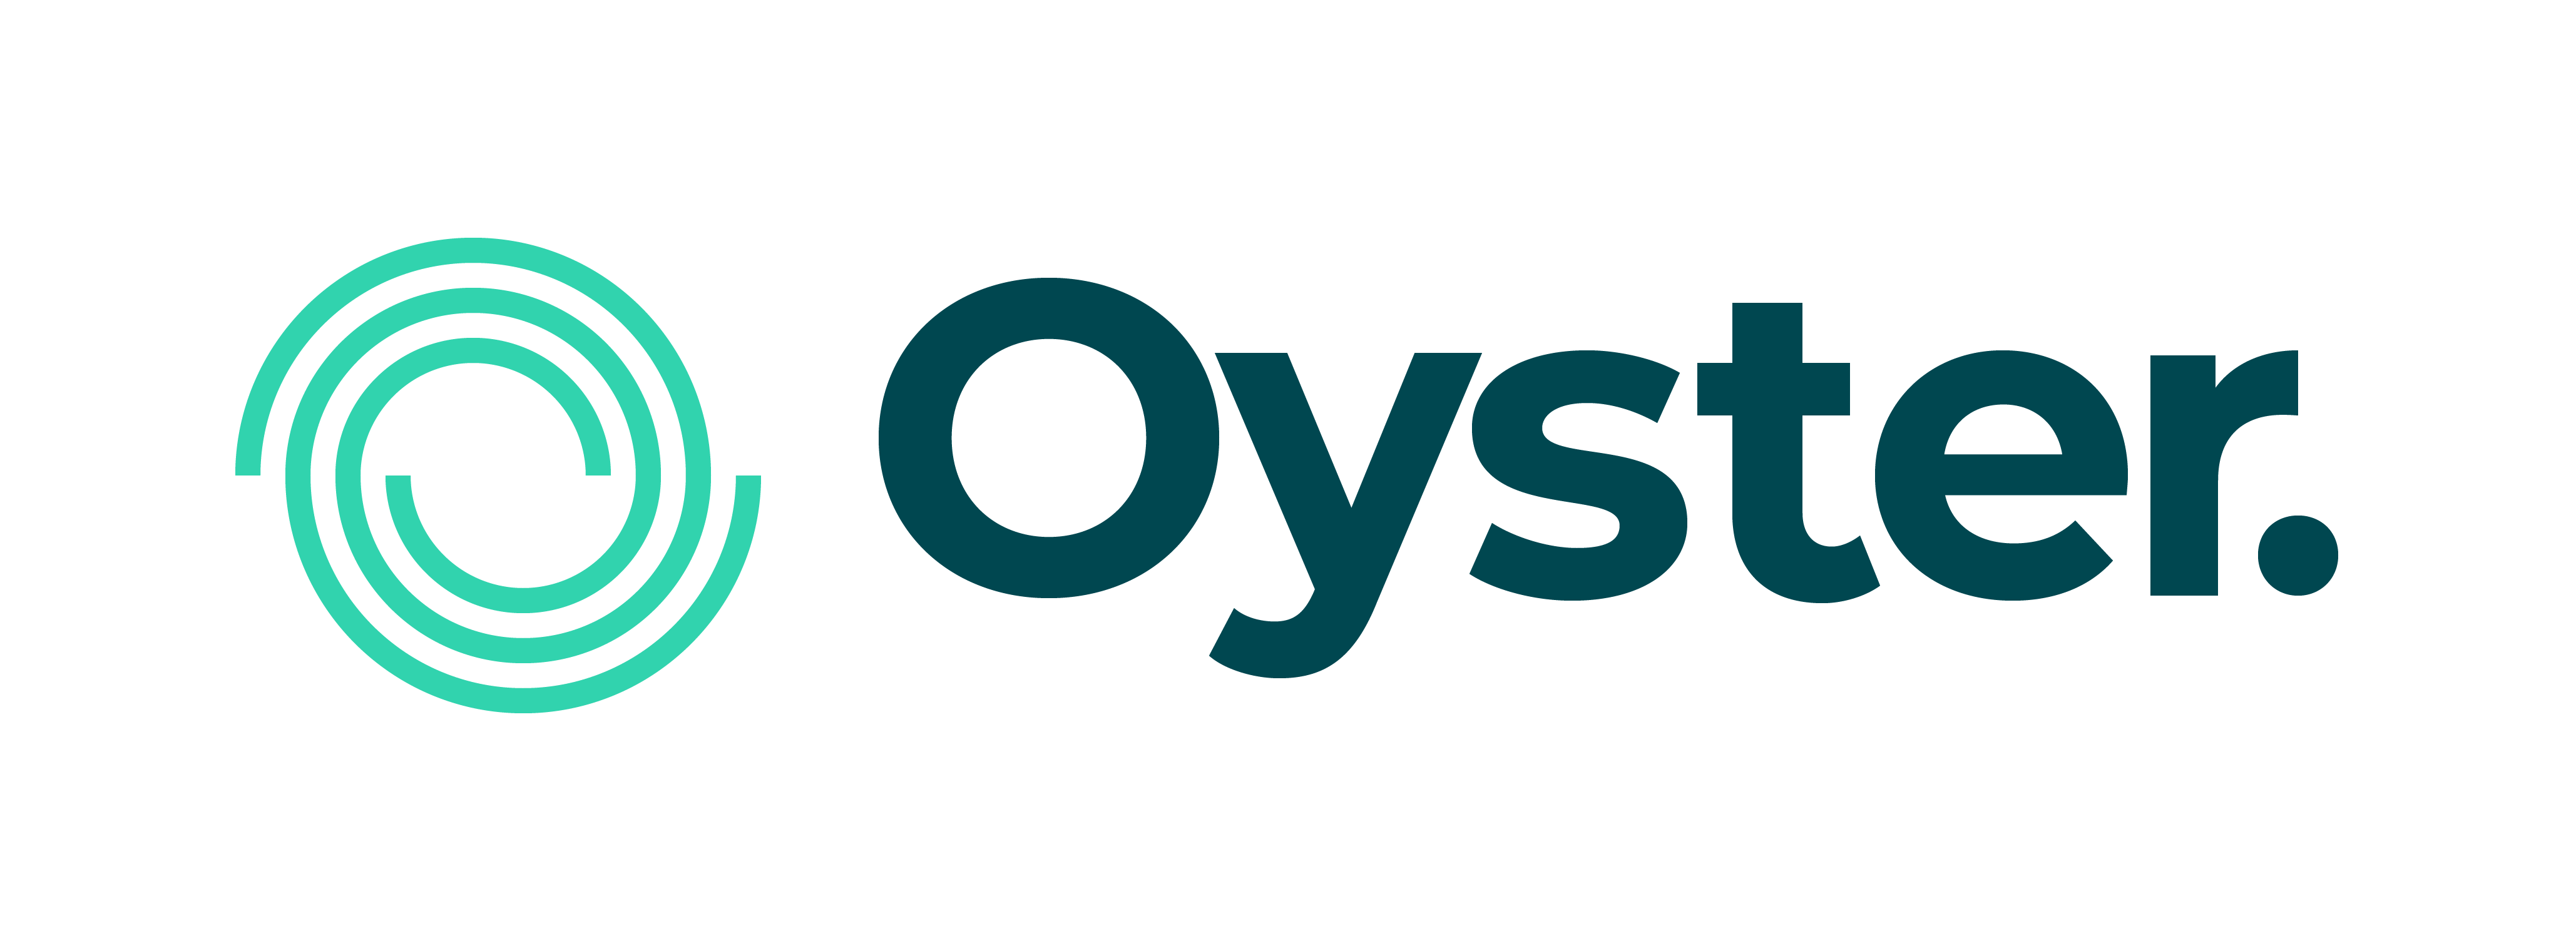 Página principal del Centro de ayuda de Oyster